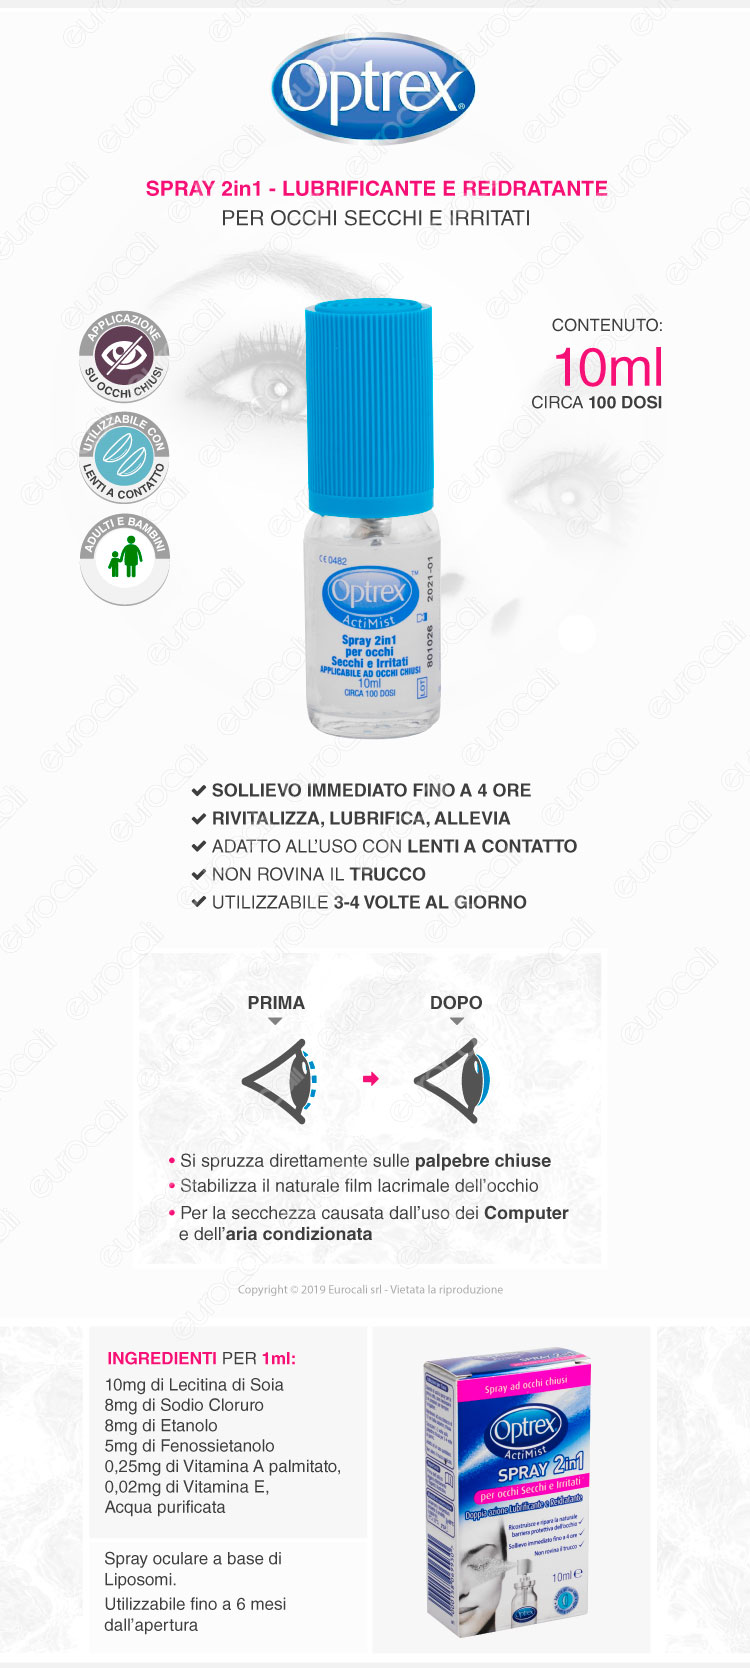 Spray 2in1 Per Occhi Secchi e Irritati Optrex ActiMist - Flacone da 10ml